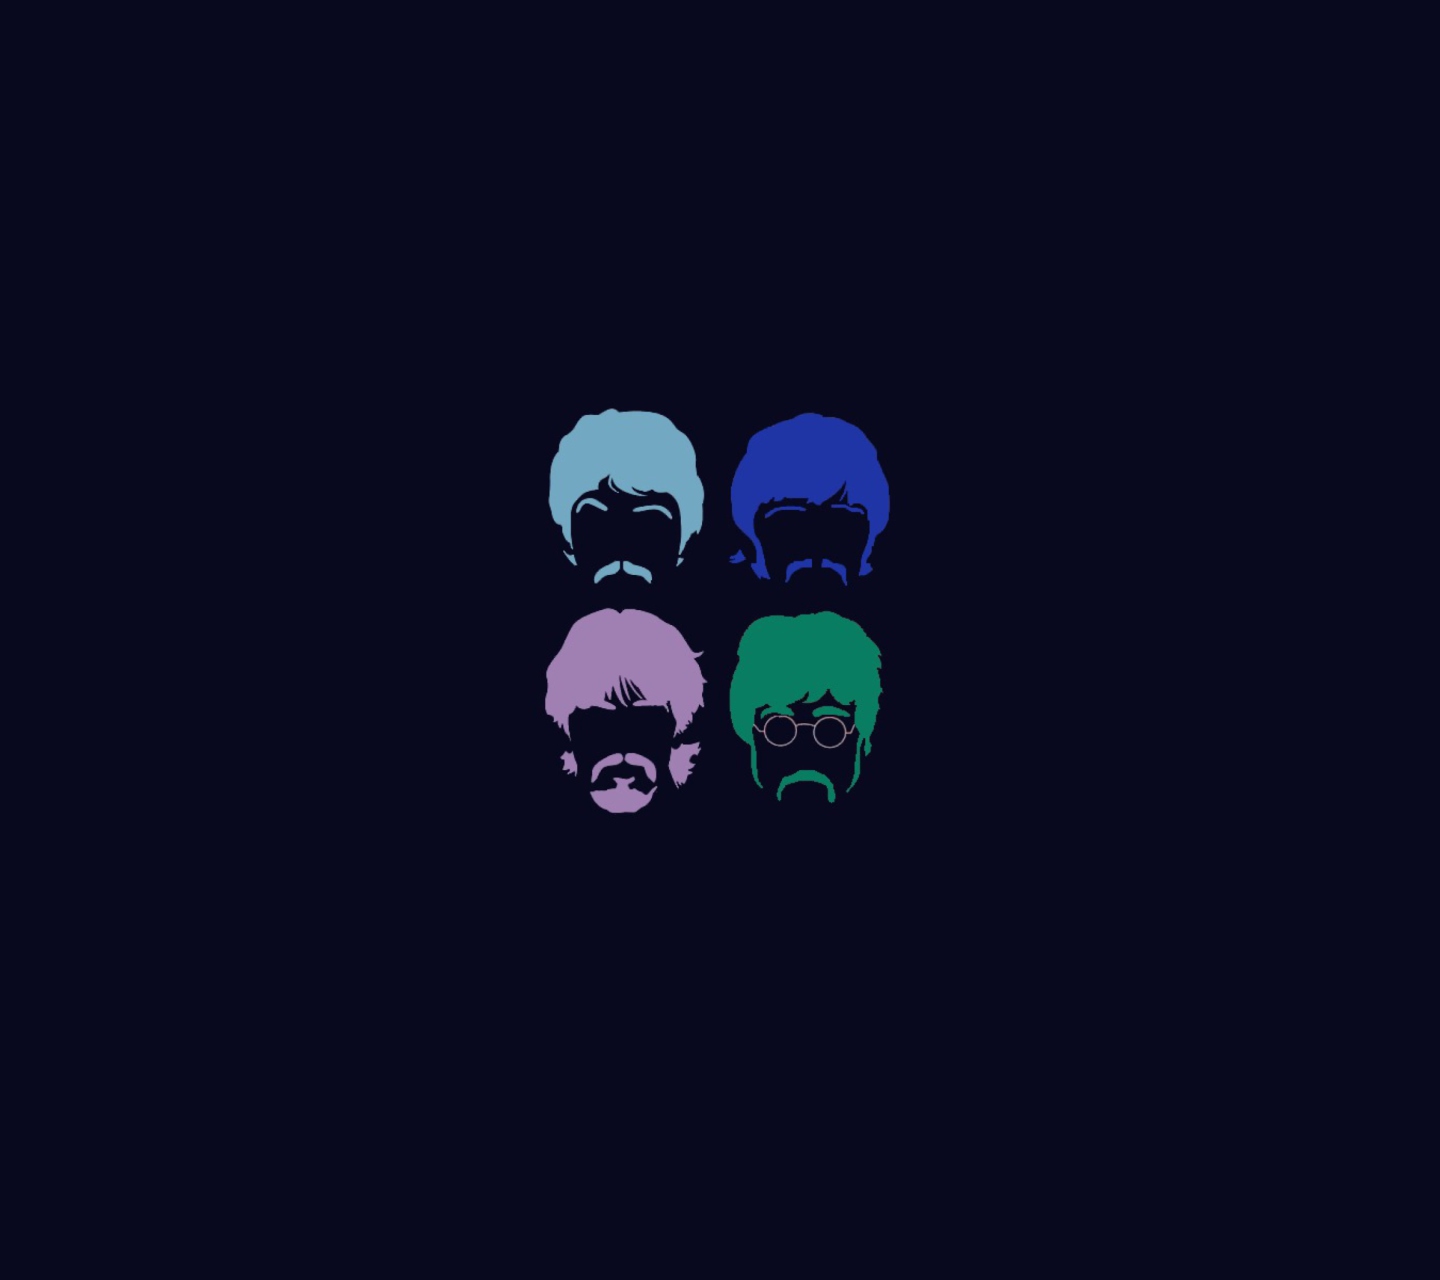 Fondo de pantalla The Beatles 1440x1280